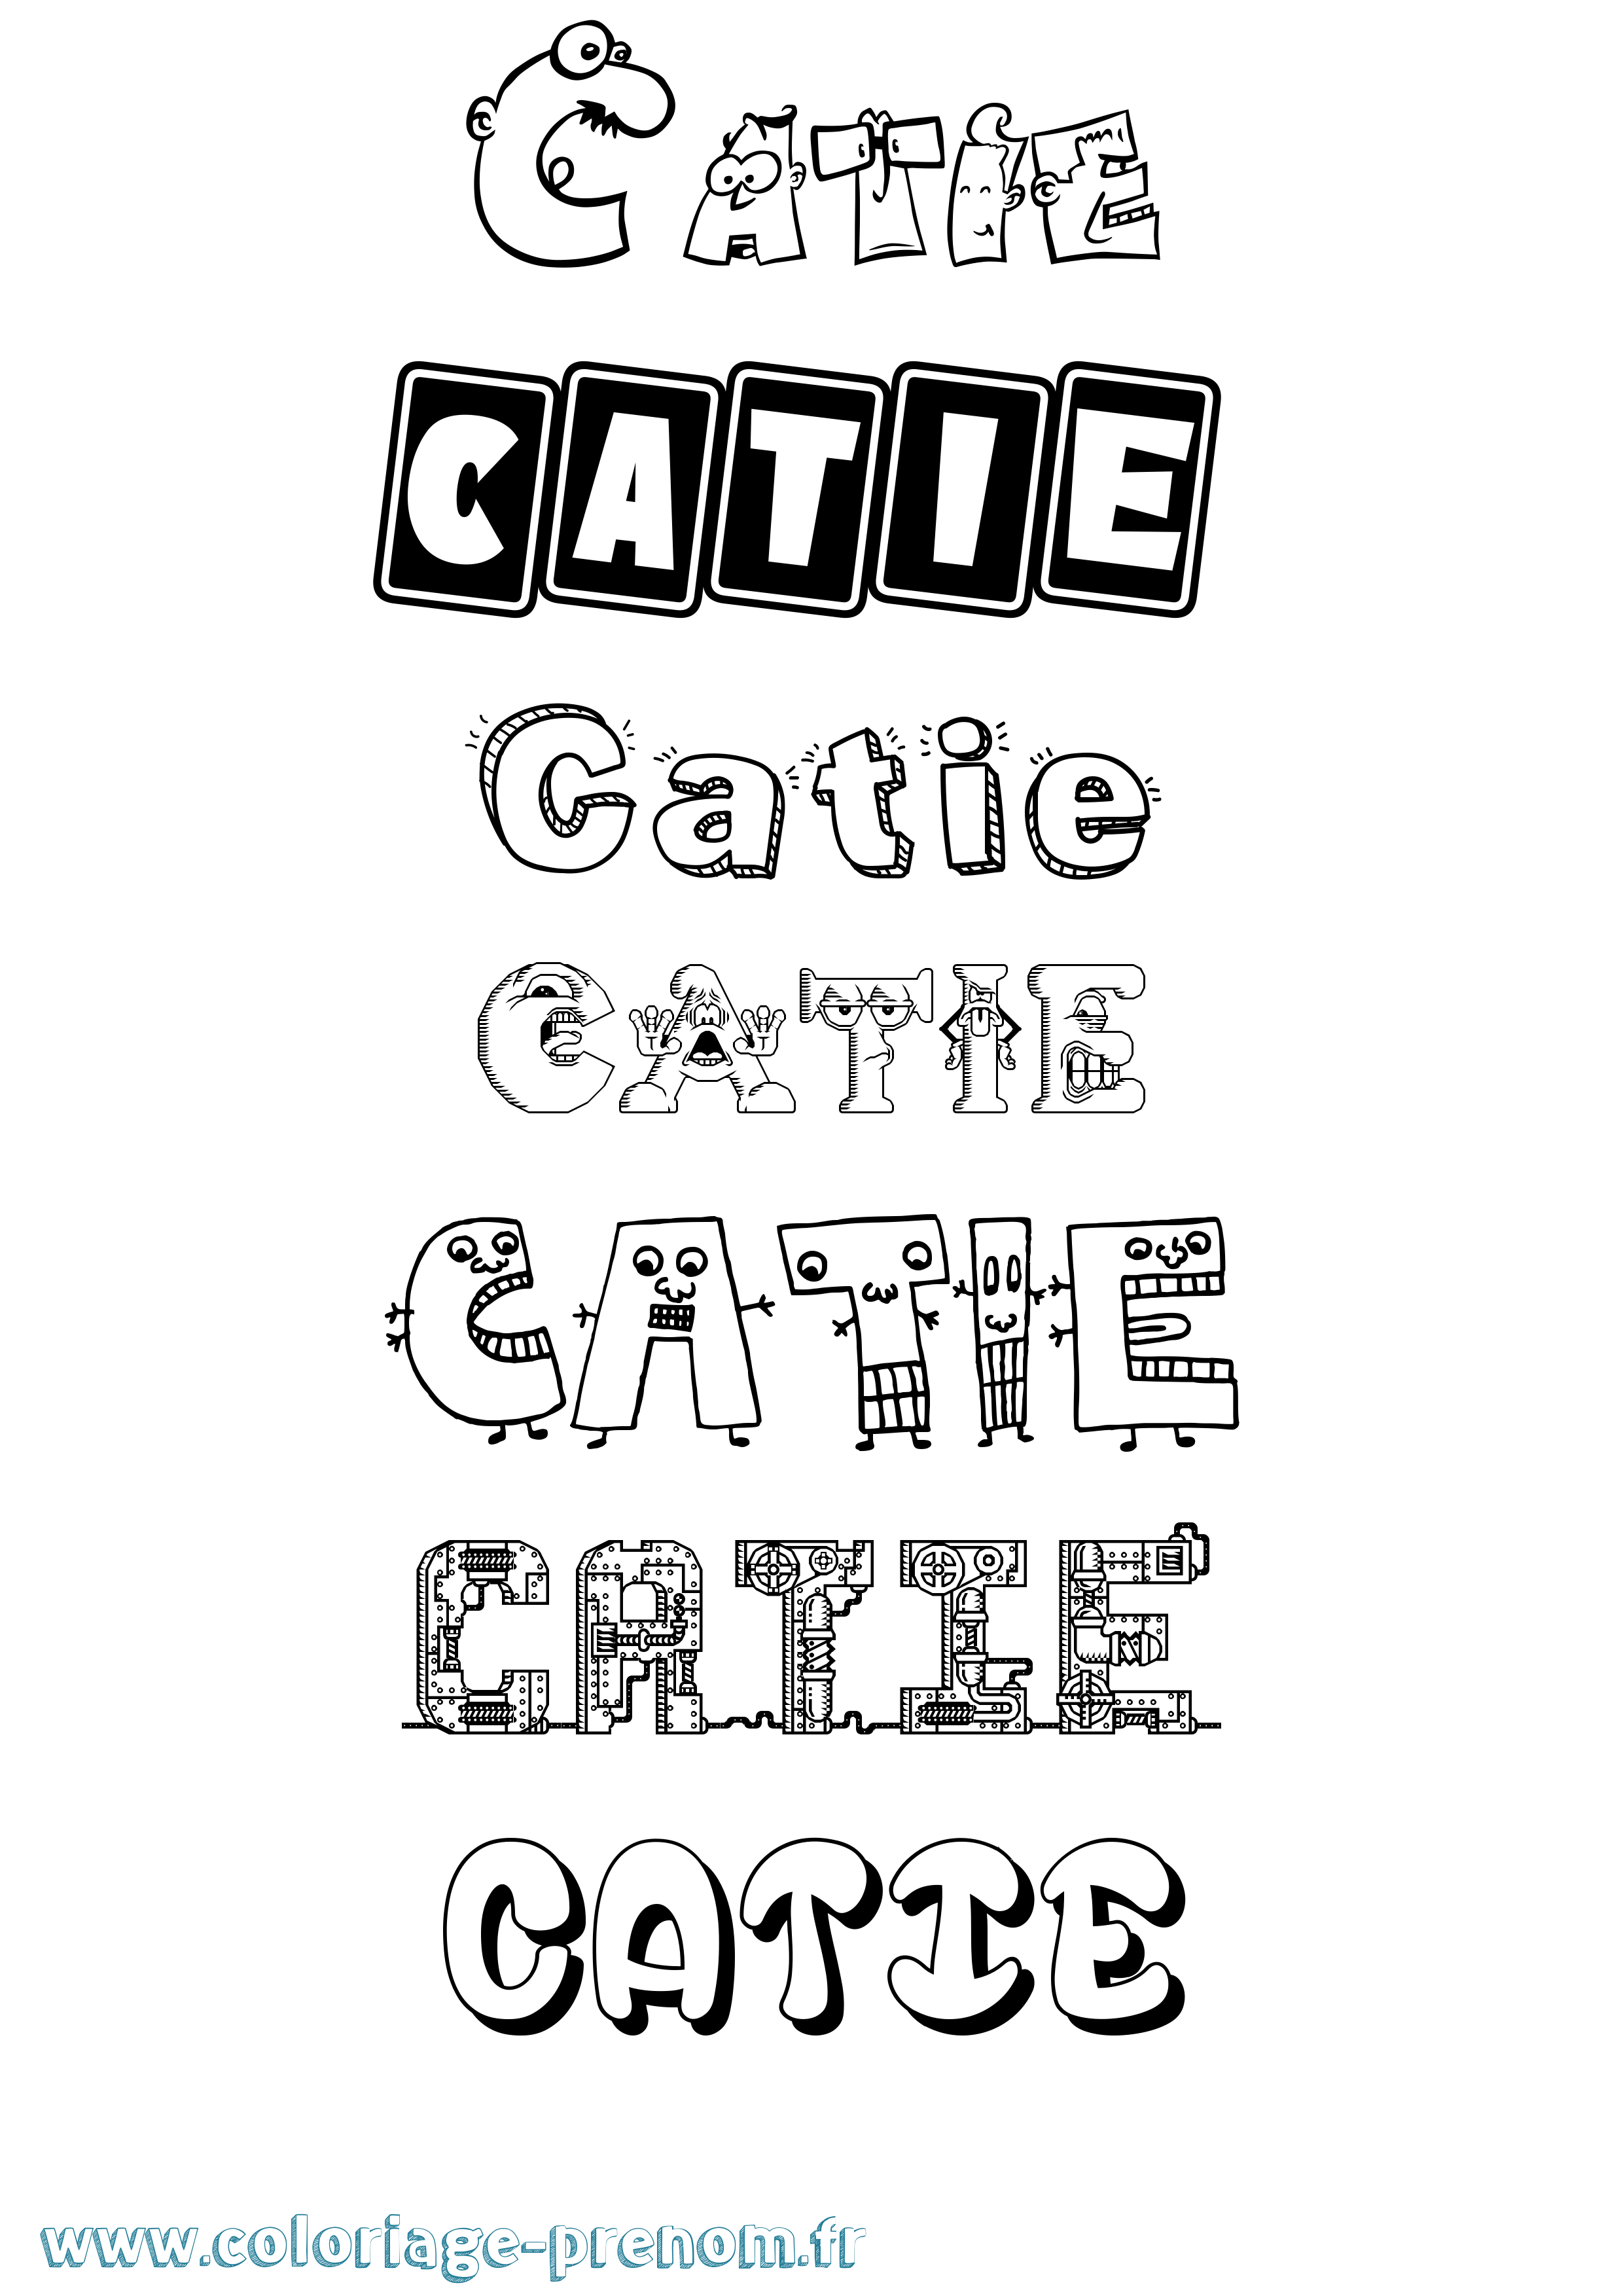 Coloriage prénom Catie Fun